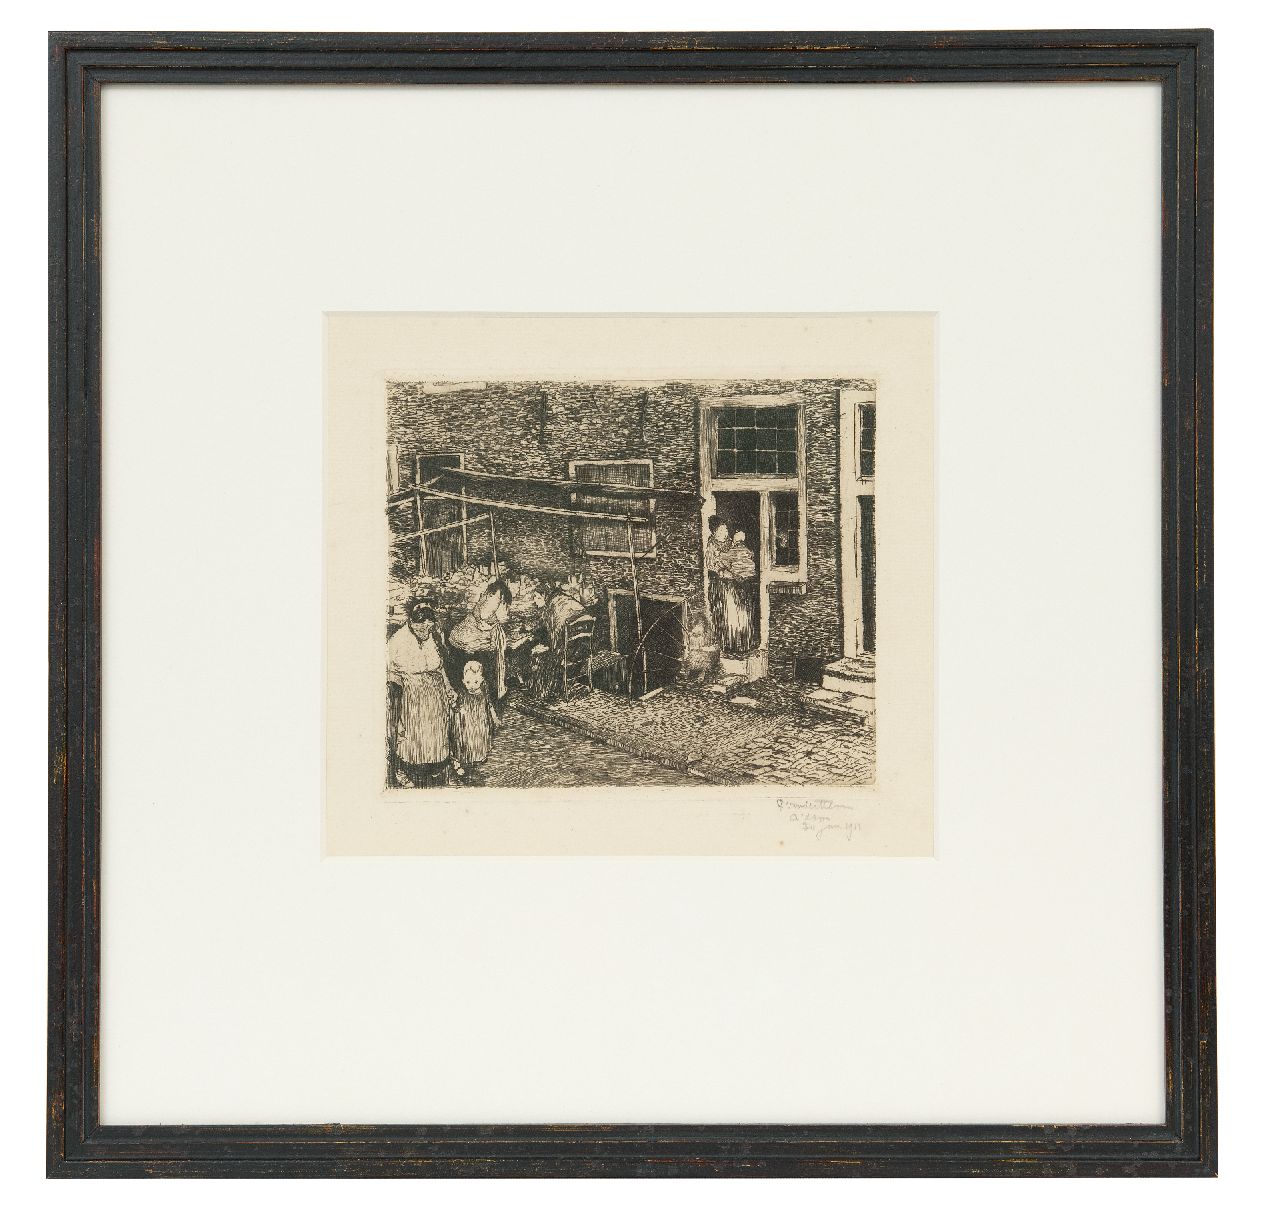 Hem P. van der | Pieter 'Piet' van der Hem | Grafiek te koop aangeboden | Straatje in Amsterdam, ets 14,3 x 17,3 cm, gesigneerd rechtsonder en gedateerd 30 jan. 1911